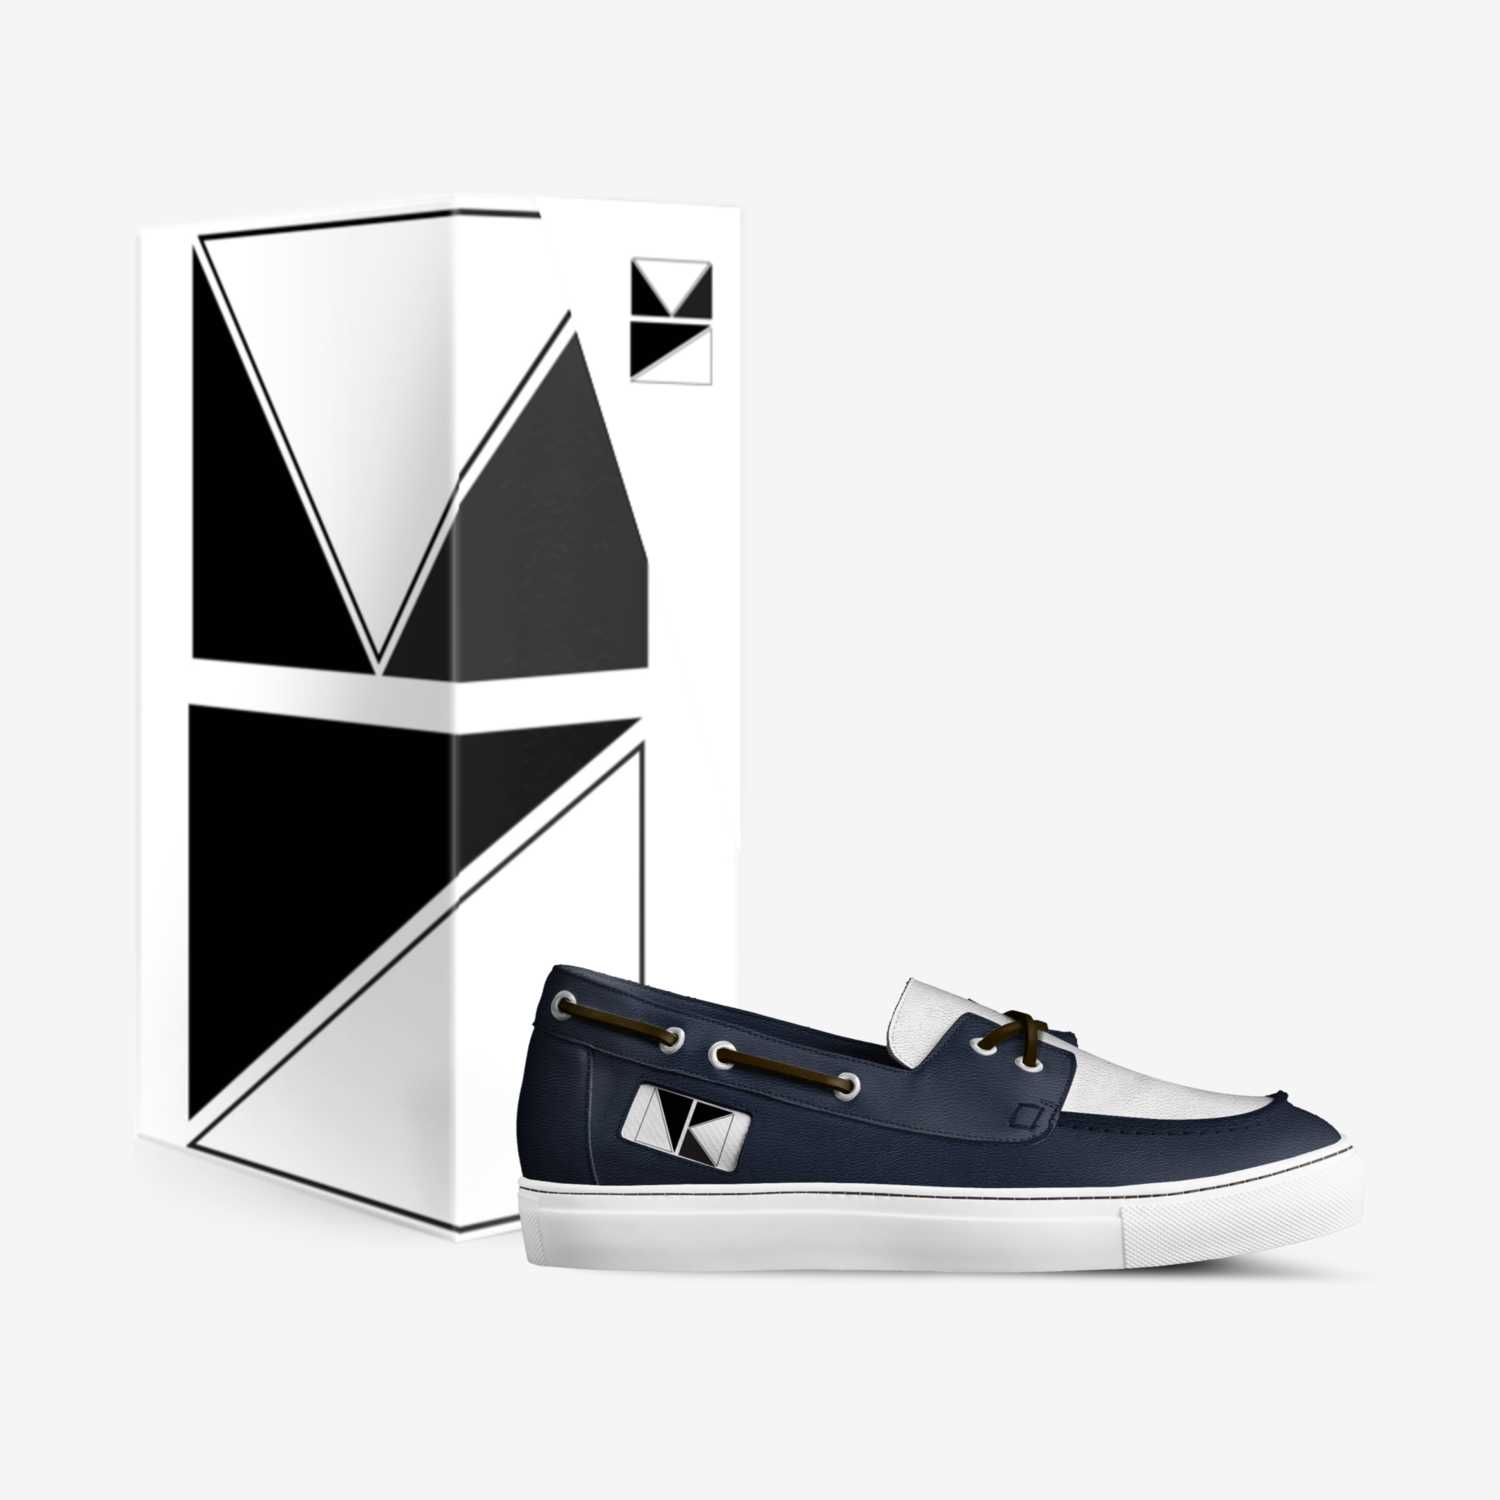 Kenzo Neukens custom made in Italy shoes by Kenzo Neukens | Box view